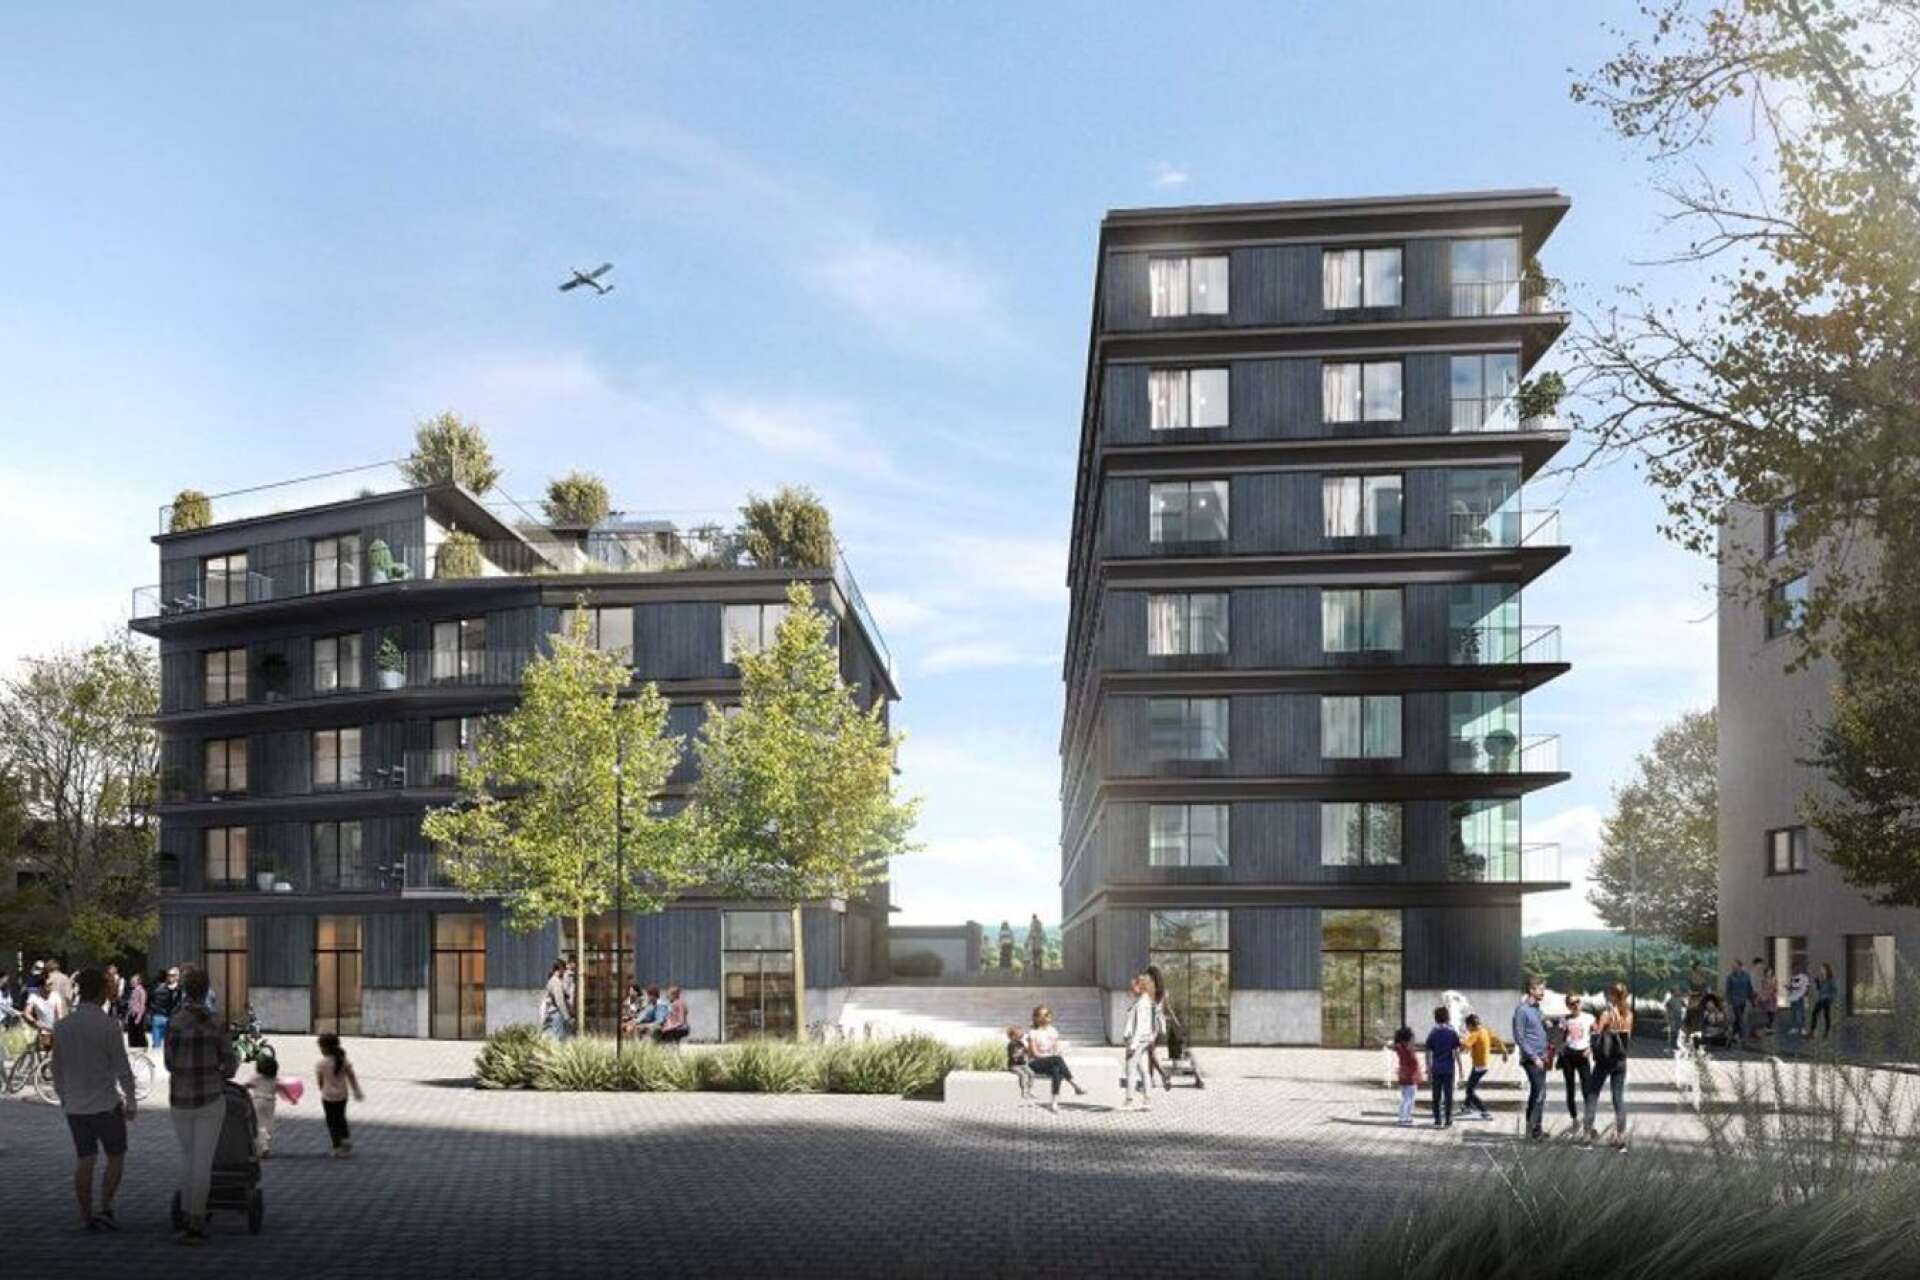 Så här kommer Löfberg fastigheters två nya flerbostadshus längs Tullholmsviken se ut. Lägenheterna släpptes förra helgen och redan har 30 procent av bostäderna sålts.